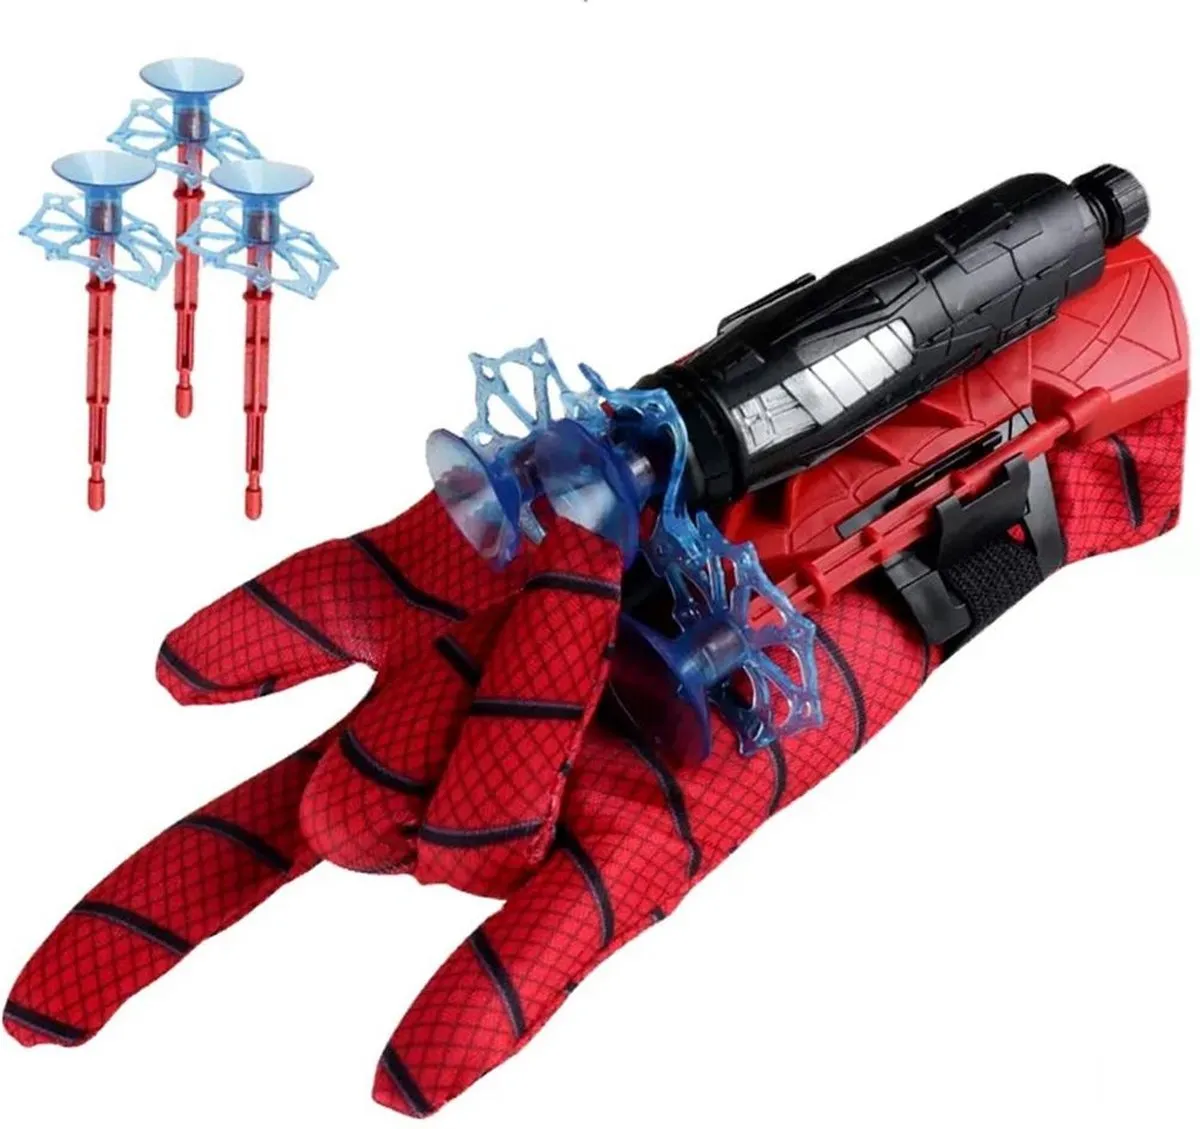 JUST23 Spiderman speelgoed - Web shooter - Web blaster - Handschoen - Kinderspeelgoed - Launcher - Marvel speelgoed